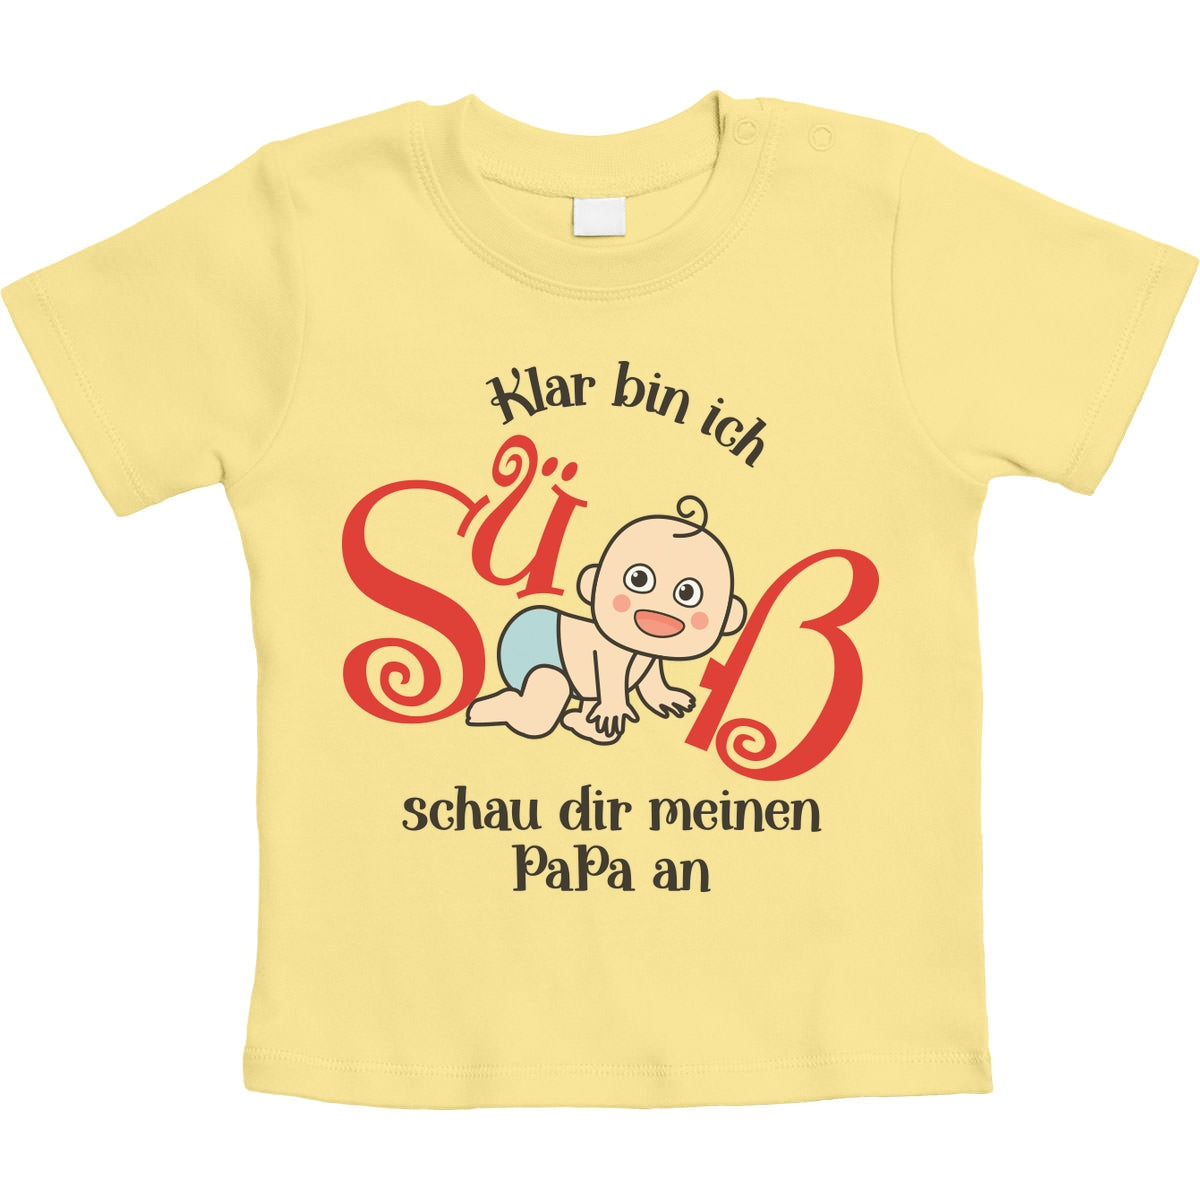 Klar bin ich süß mit süßes Baby Geschenk Papa Unisex Baby T-Shirt Gr. 66-93